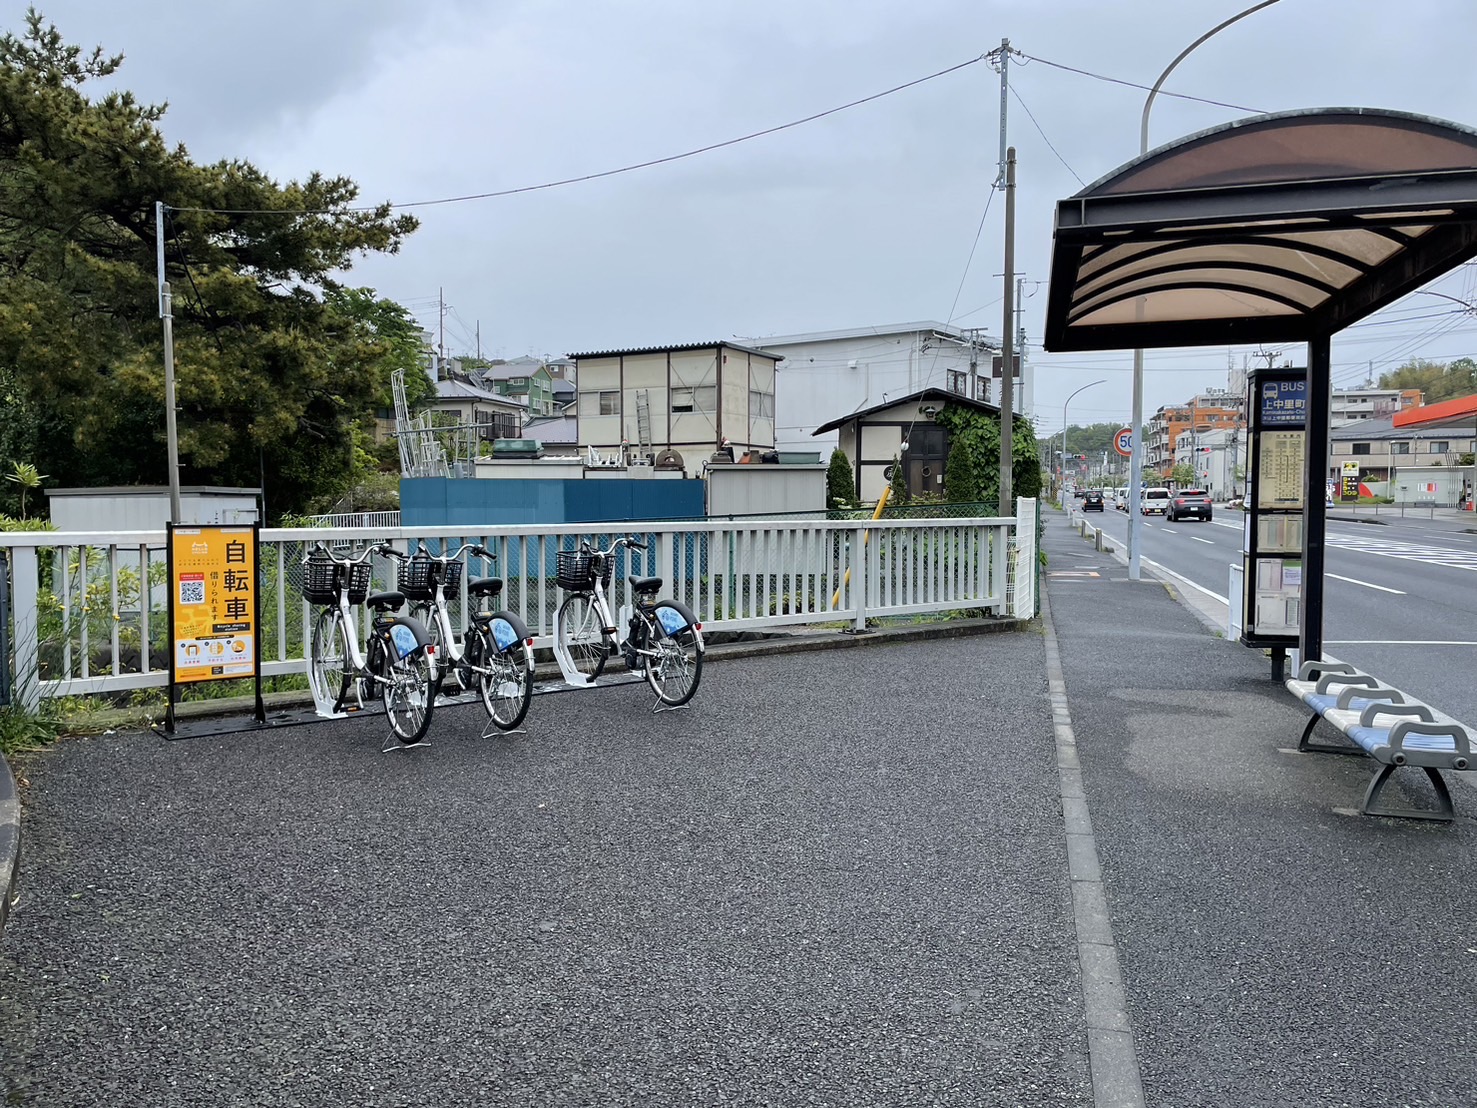 上中里町バス停前 (HELLO CYCLING ポート) image